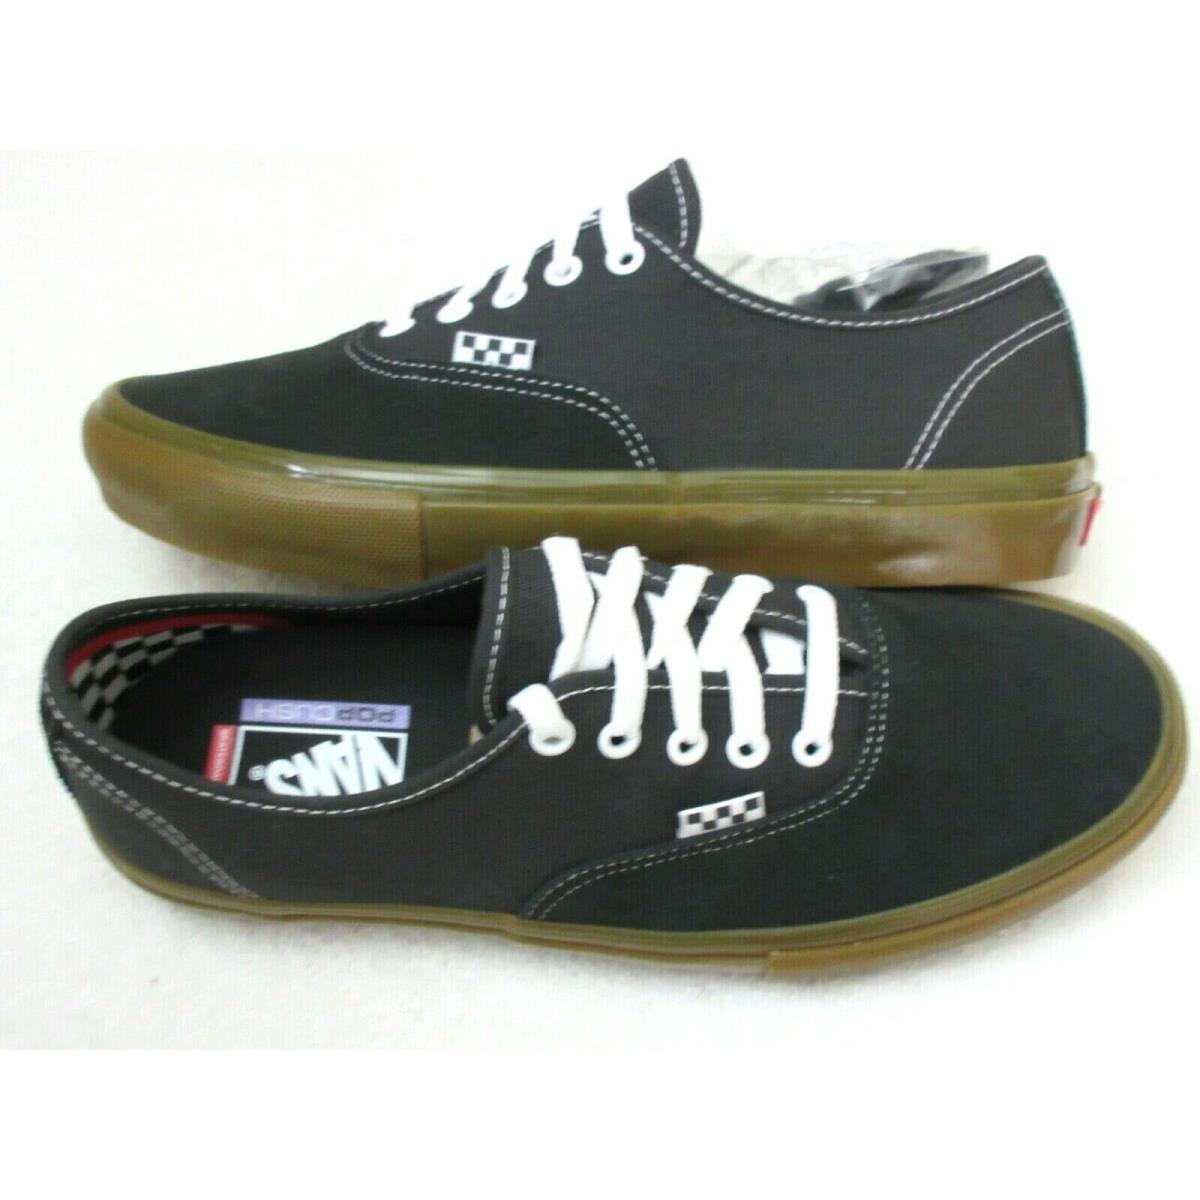 Vans Skate Authentic Men`s Skate Black Raven Gum Bottom Suede Canvas Shoes Size 9